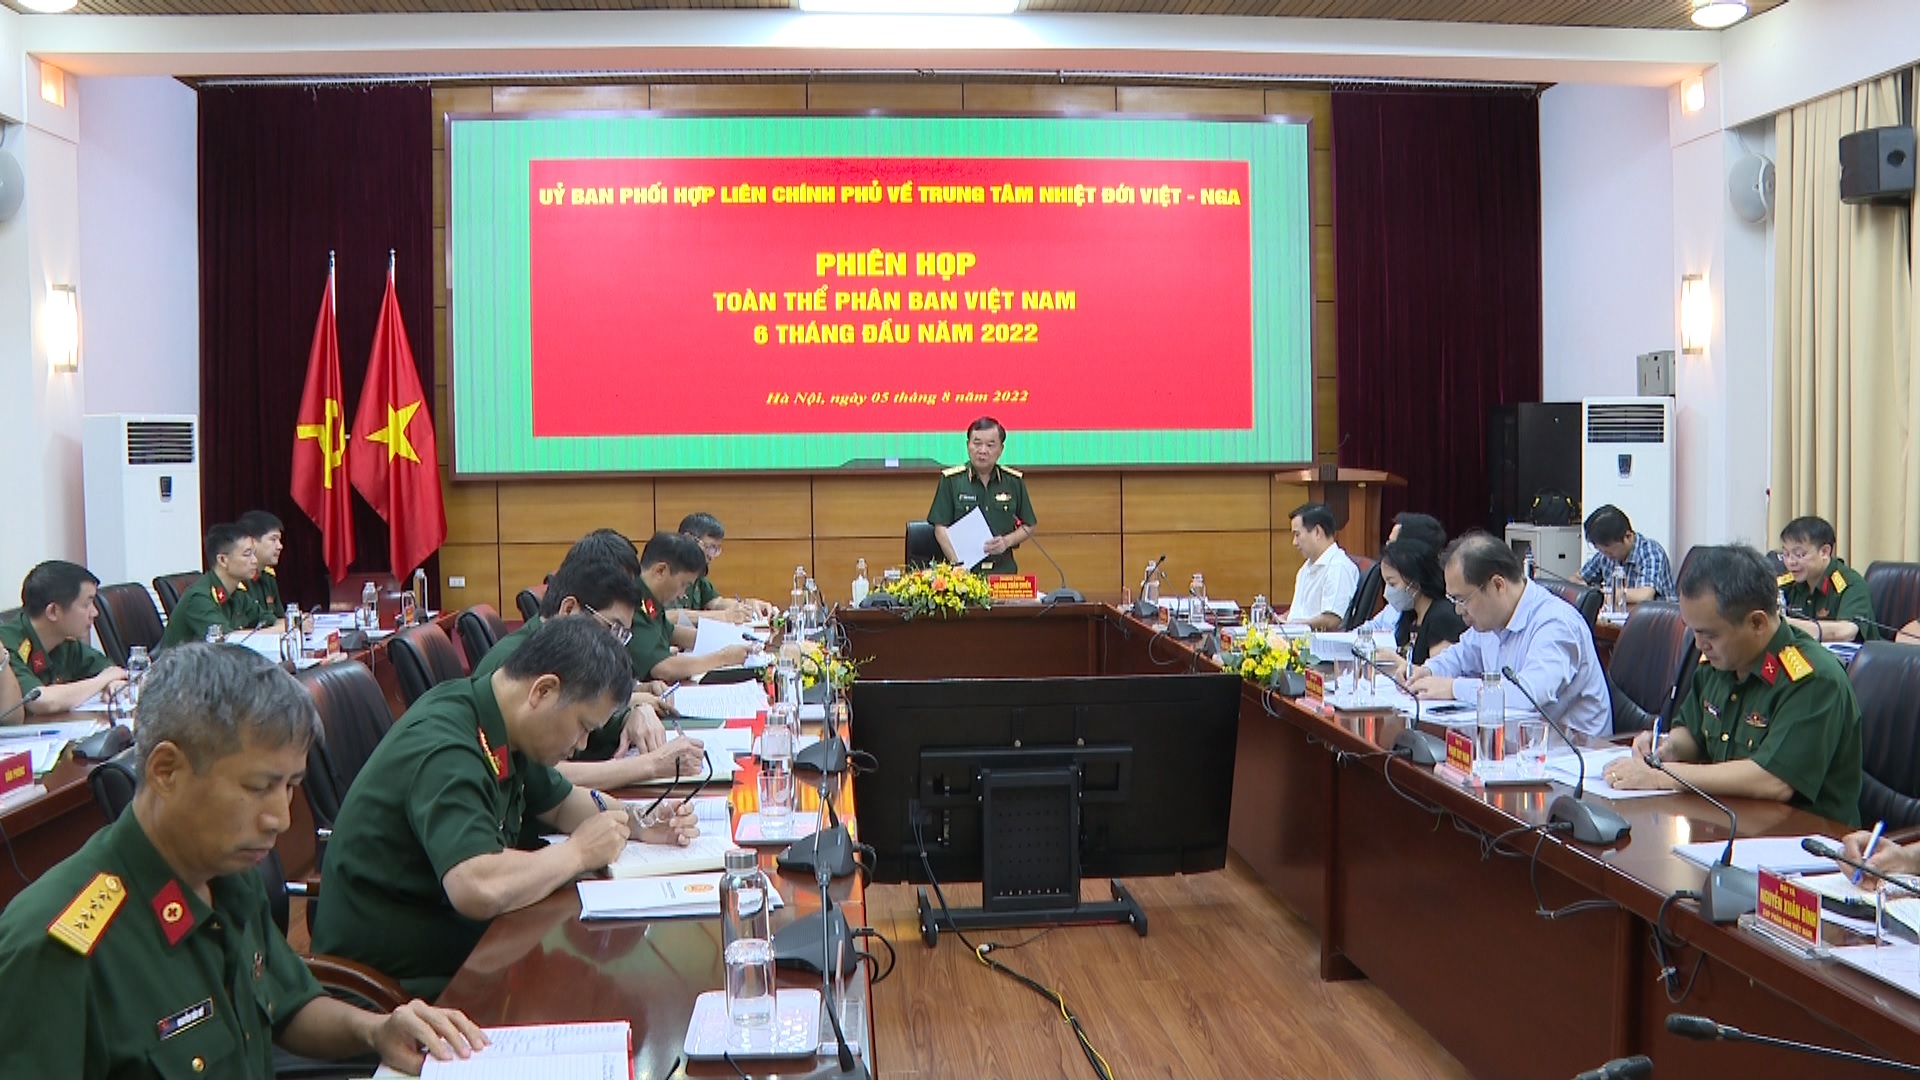 Phiên họp Phân ban Việt Nam trong Uỷ ban phối họp liên Chính phủ về Trung tâm Nhiệt đới Việt - Nga 6 tháng đầu năm 2022